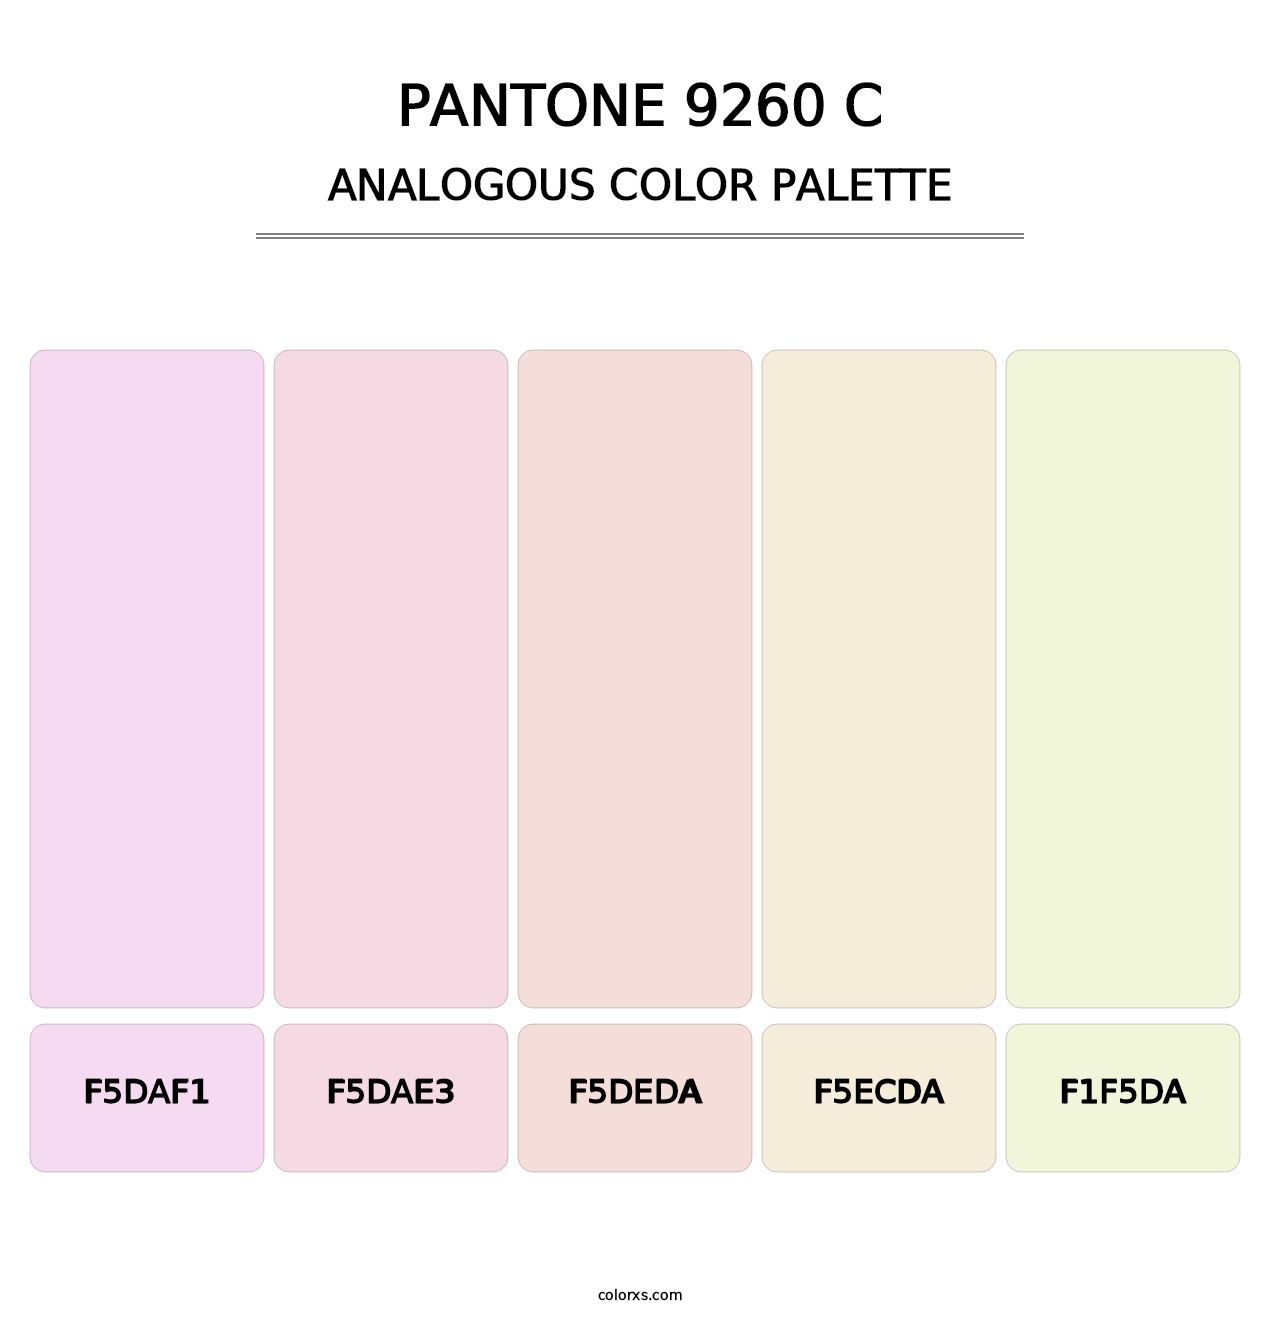 PANTONE 9260 C - Analogous Color Palette